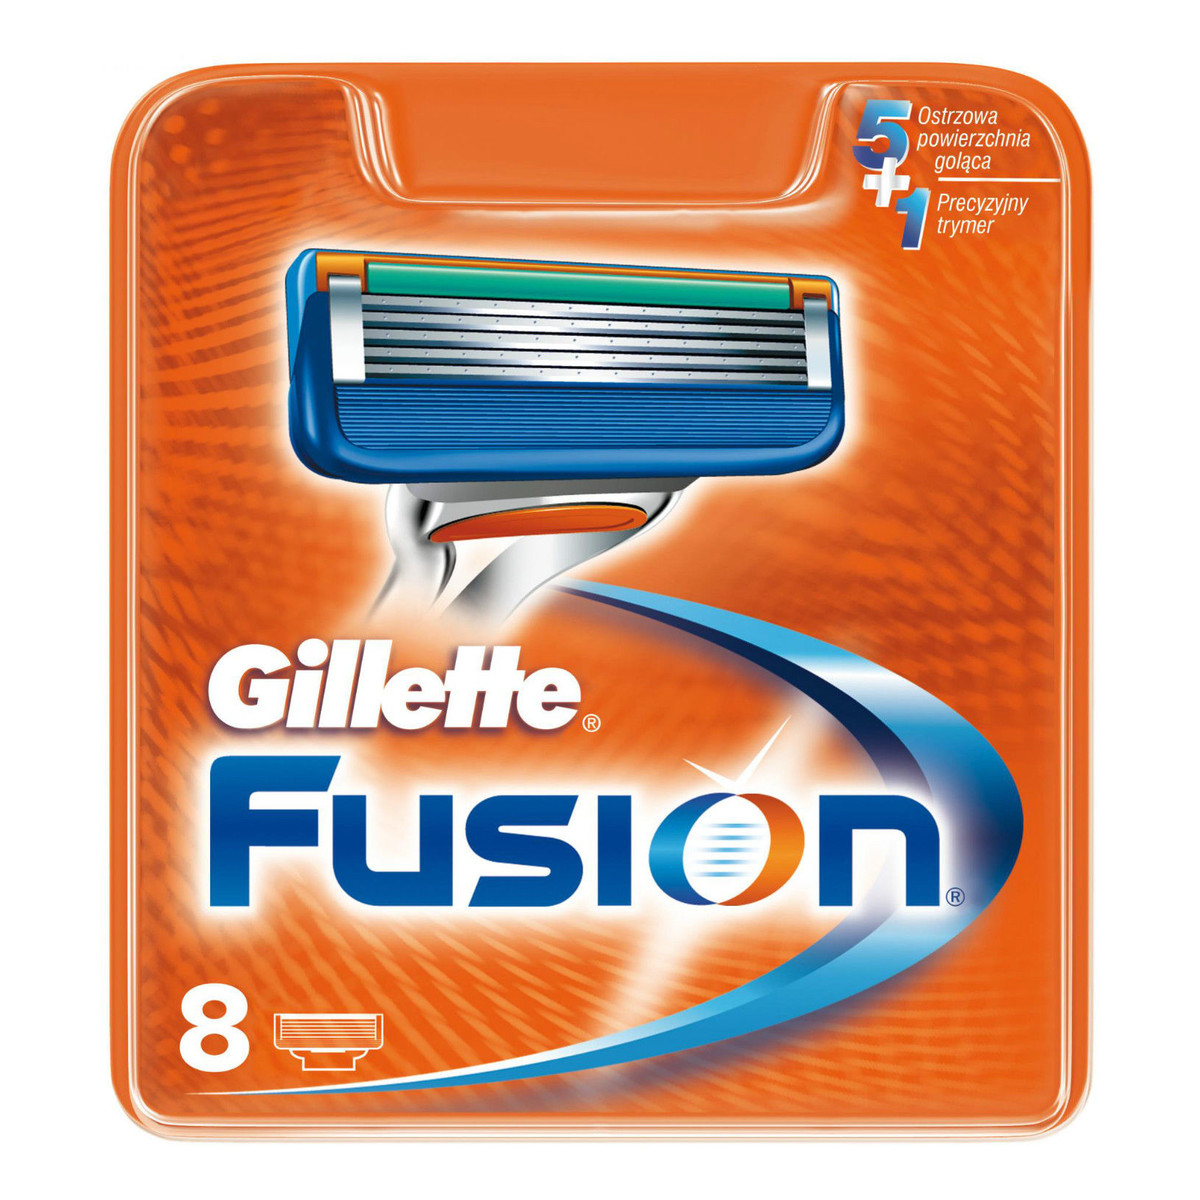 Gillette Fusion Wymienne ostrza do maszynki do golenia 8szt